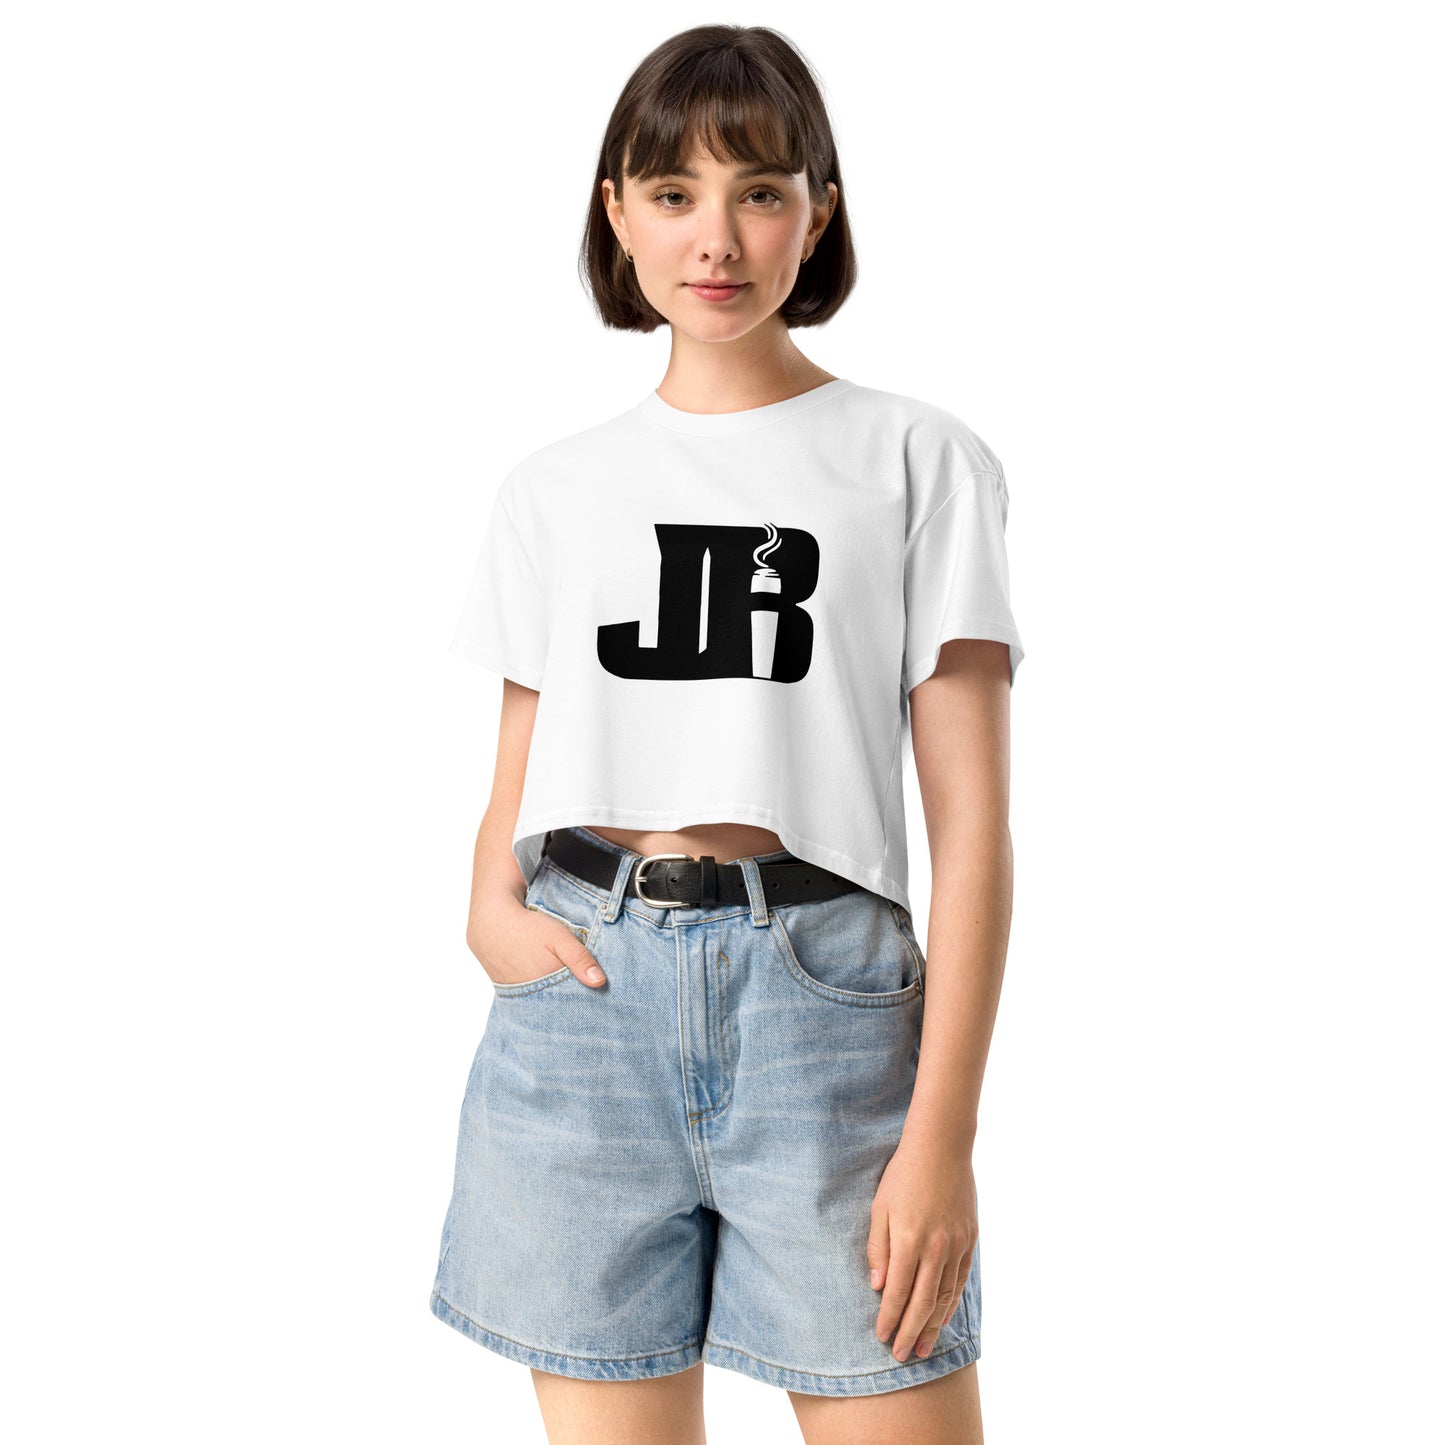 JB Women’s crop top